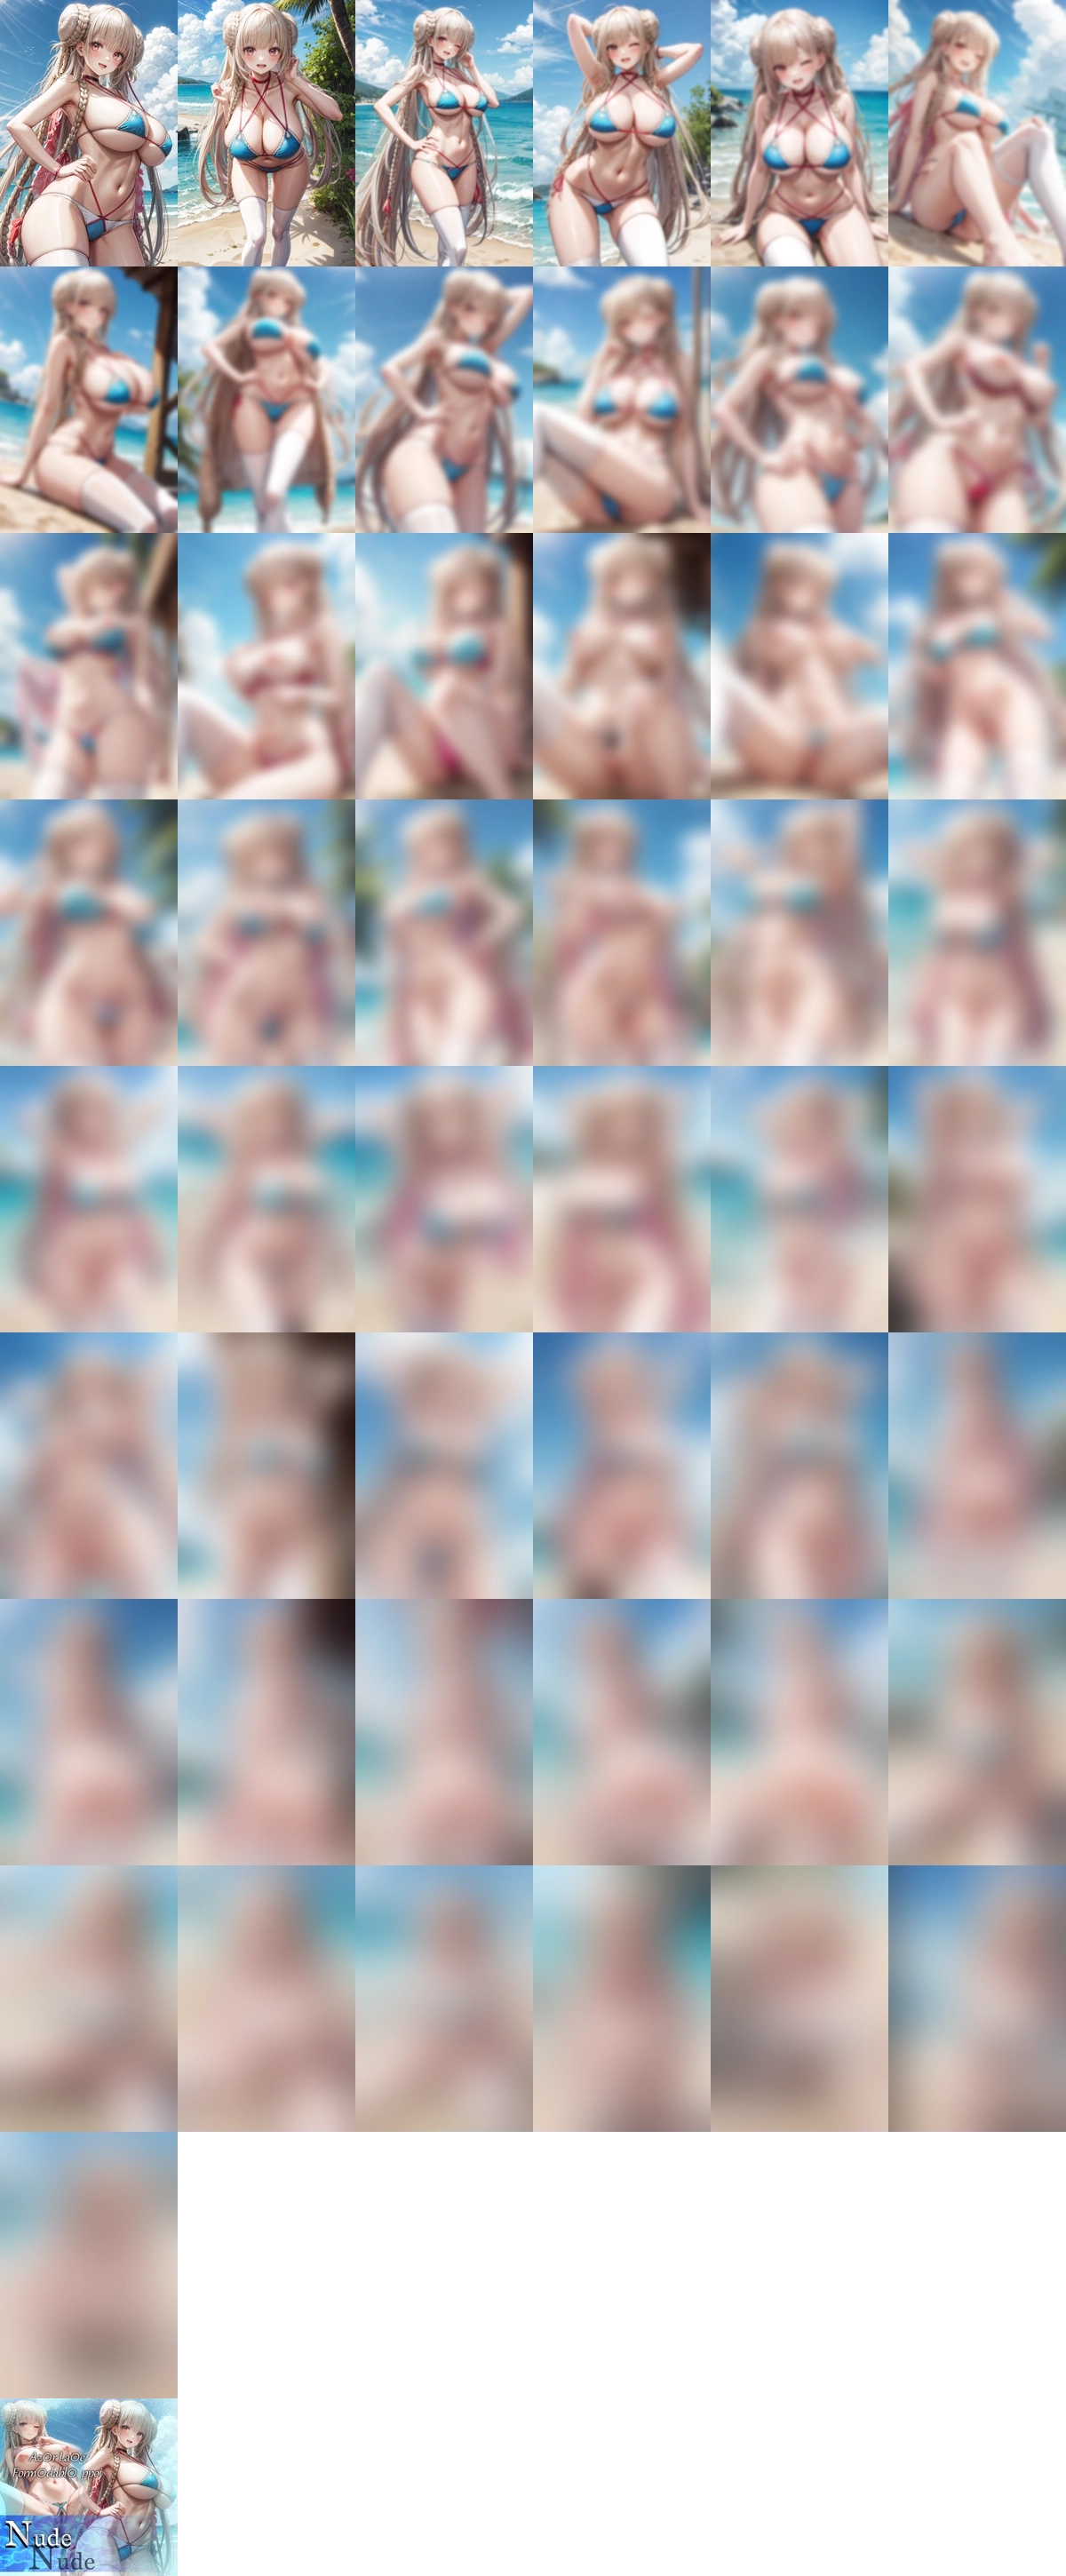 アズールレーン フォーミダブル 水着 nude 1 のAIエロ画像 50pic